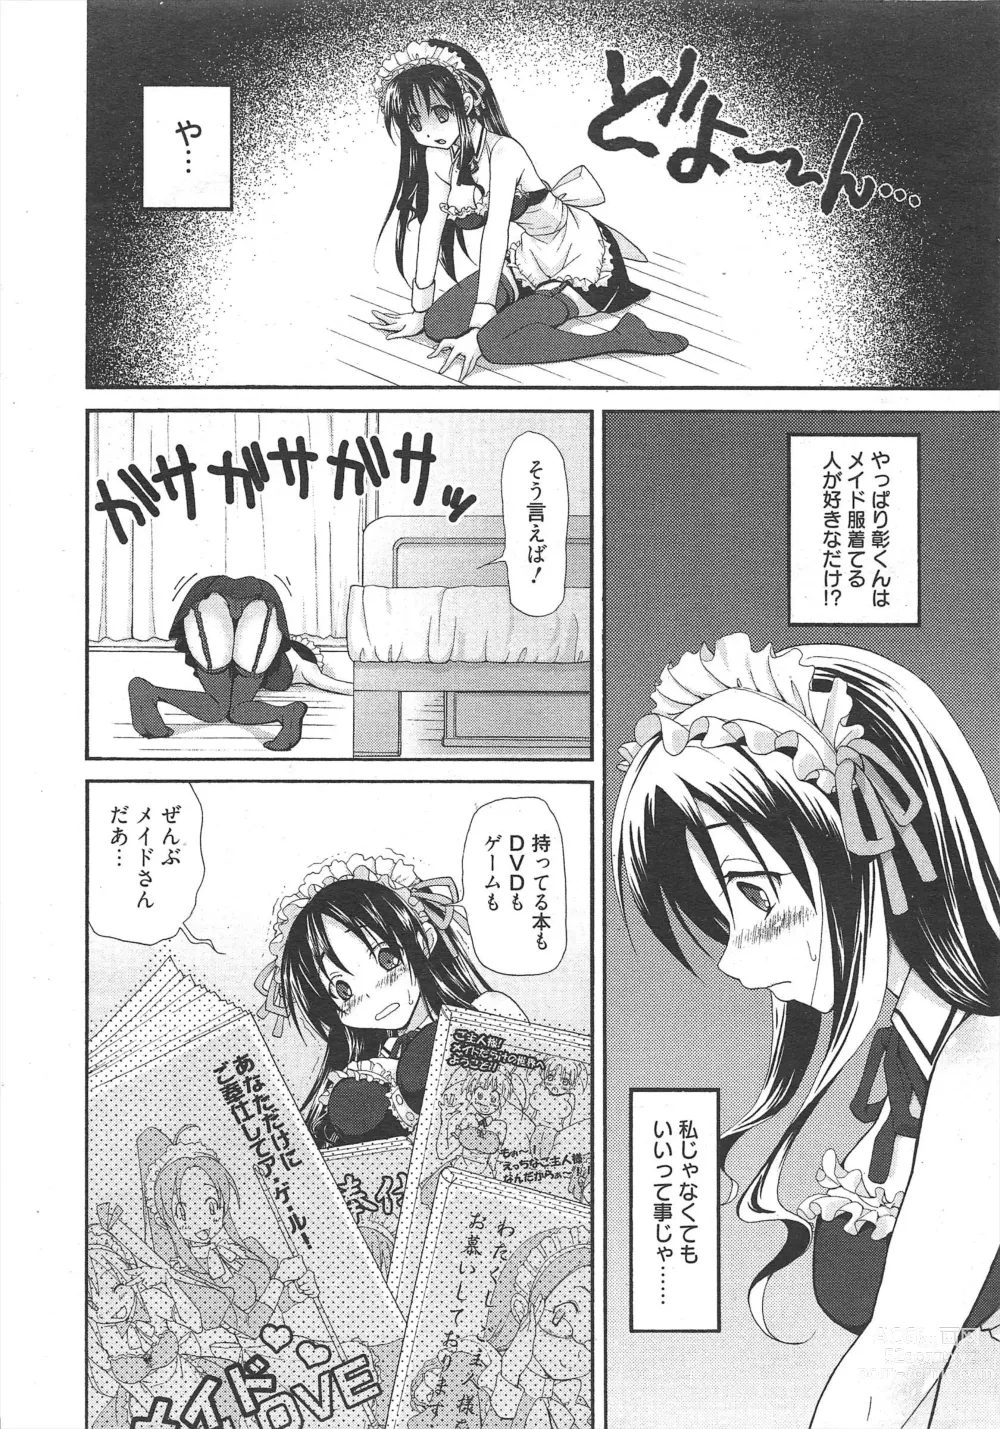 Page 12 of manga Manga Bangaichi 2011-08